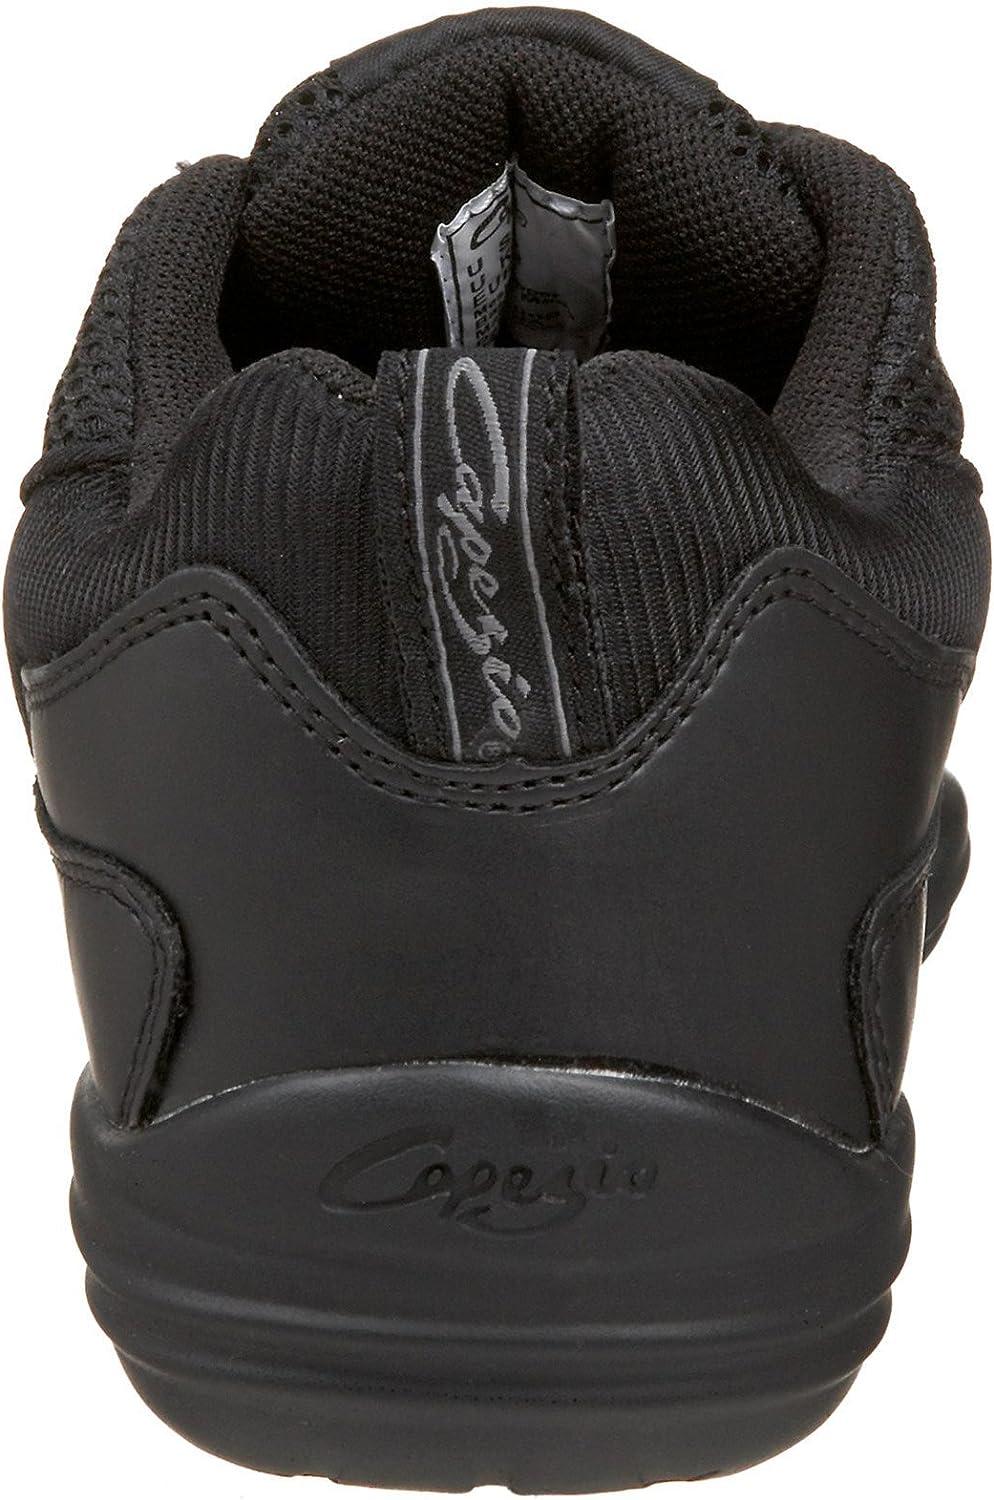 Capezio DS11C Fierce Hip Hop Dance Shoes - Kids Sizes